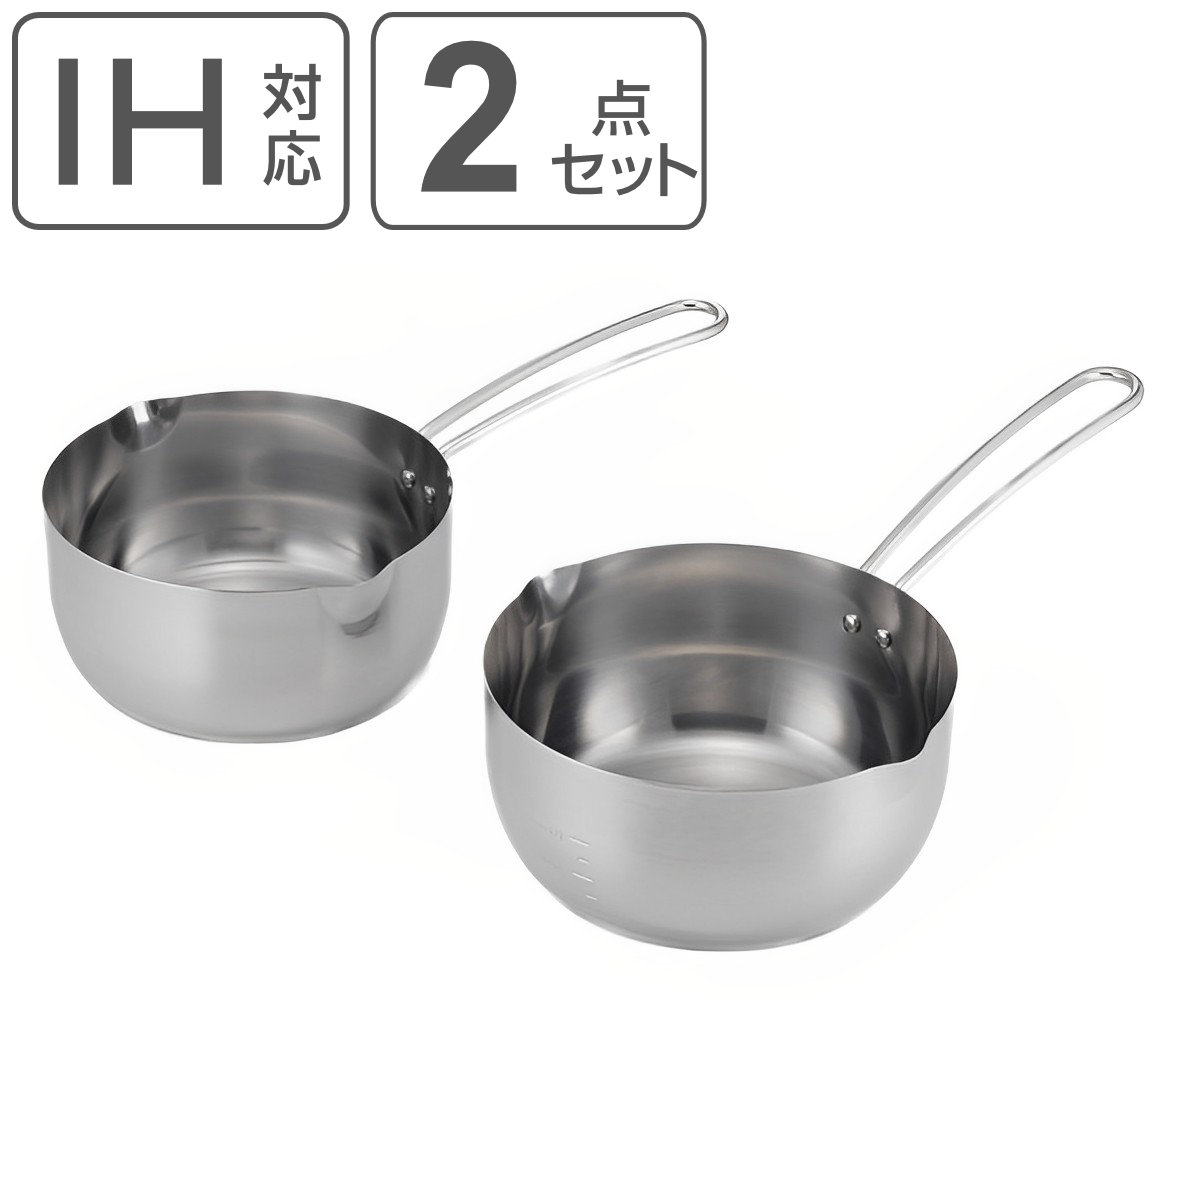 雪平鍋2点セット IH対応 食洗機で洗えるゆきひら鍋 ステンレス製 日本